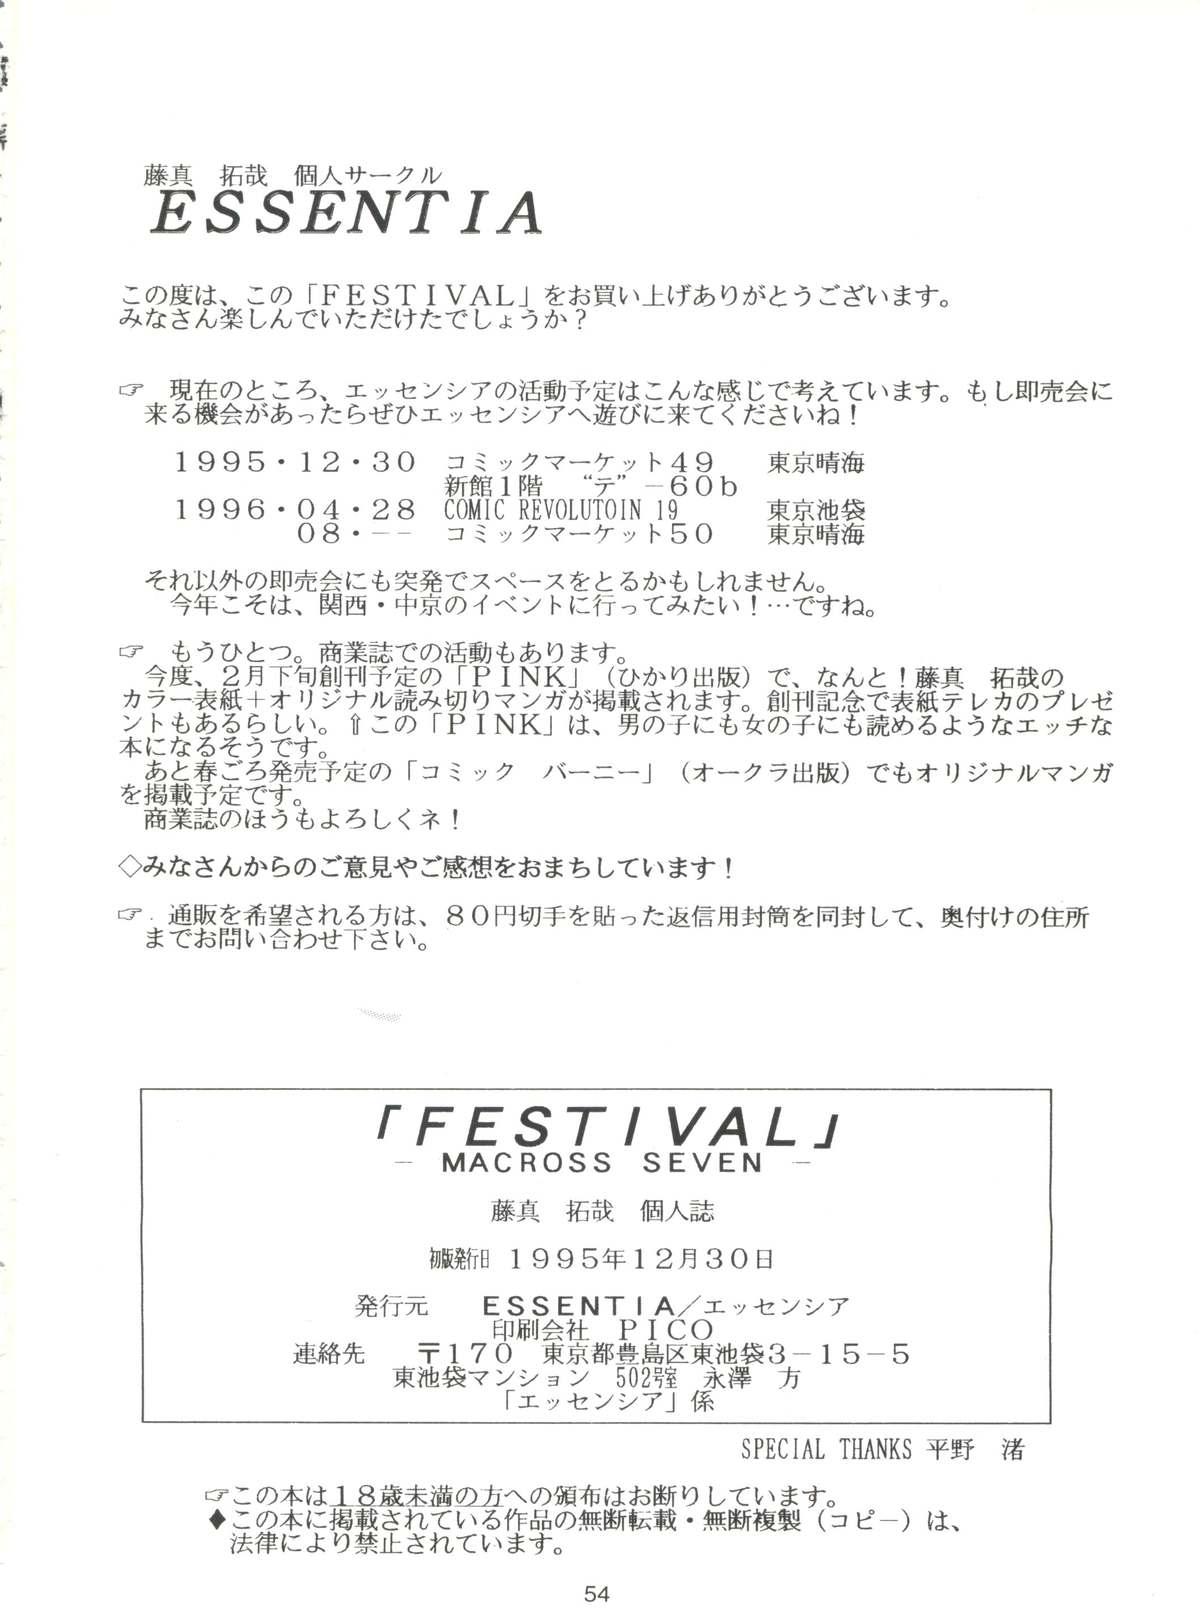 Festival 53